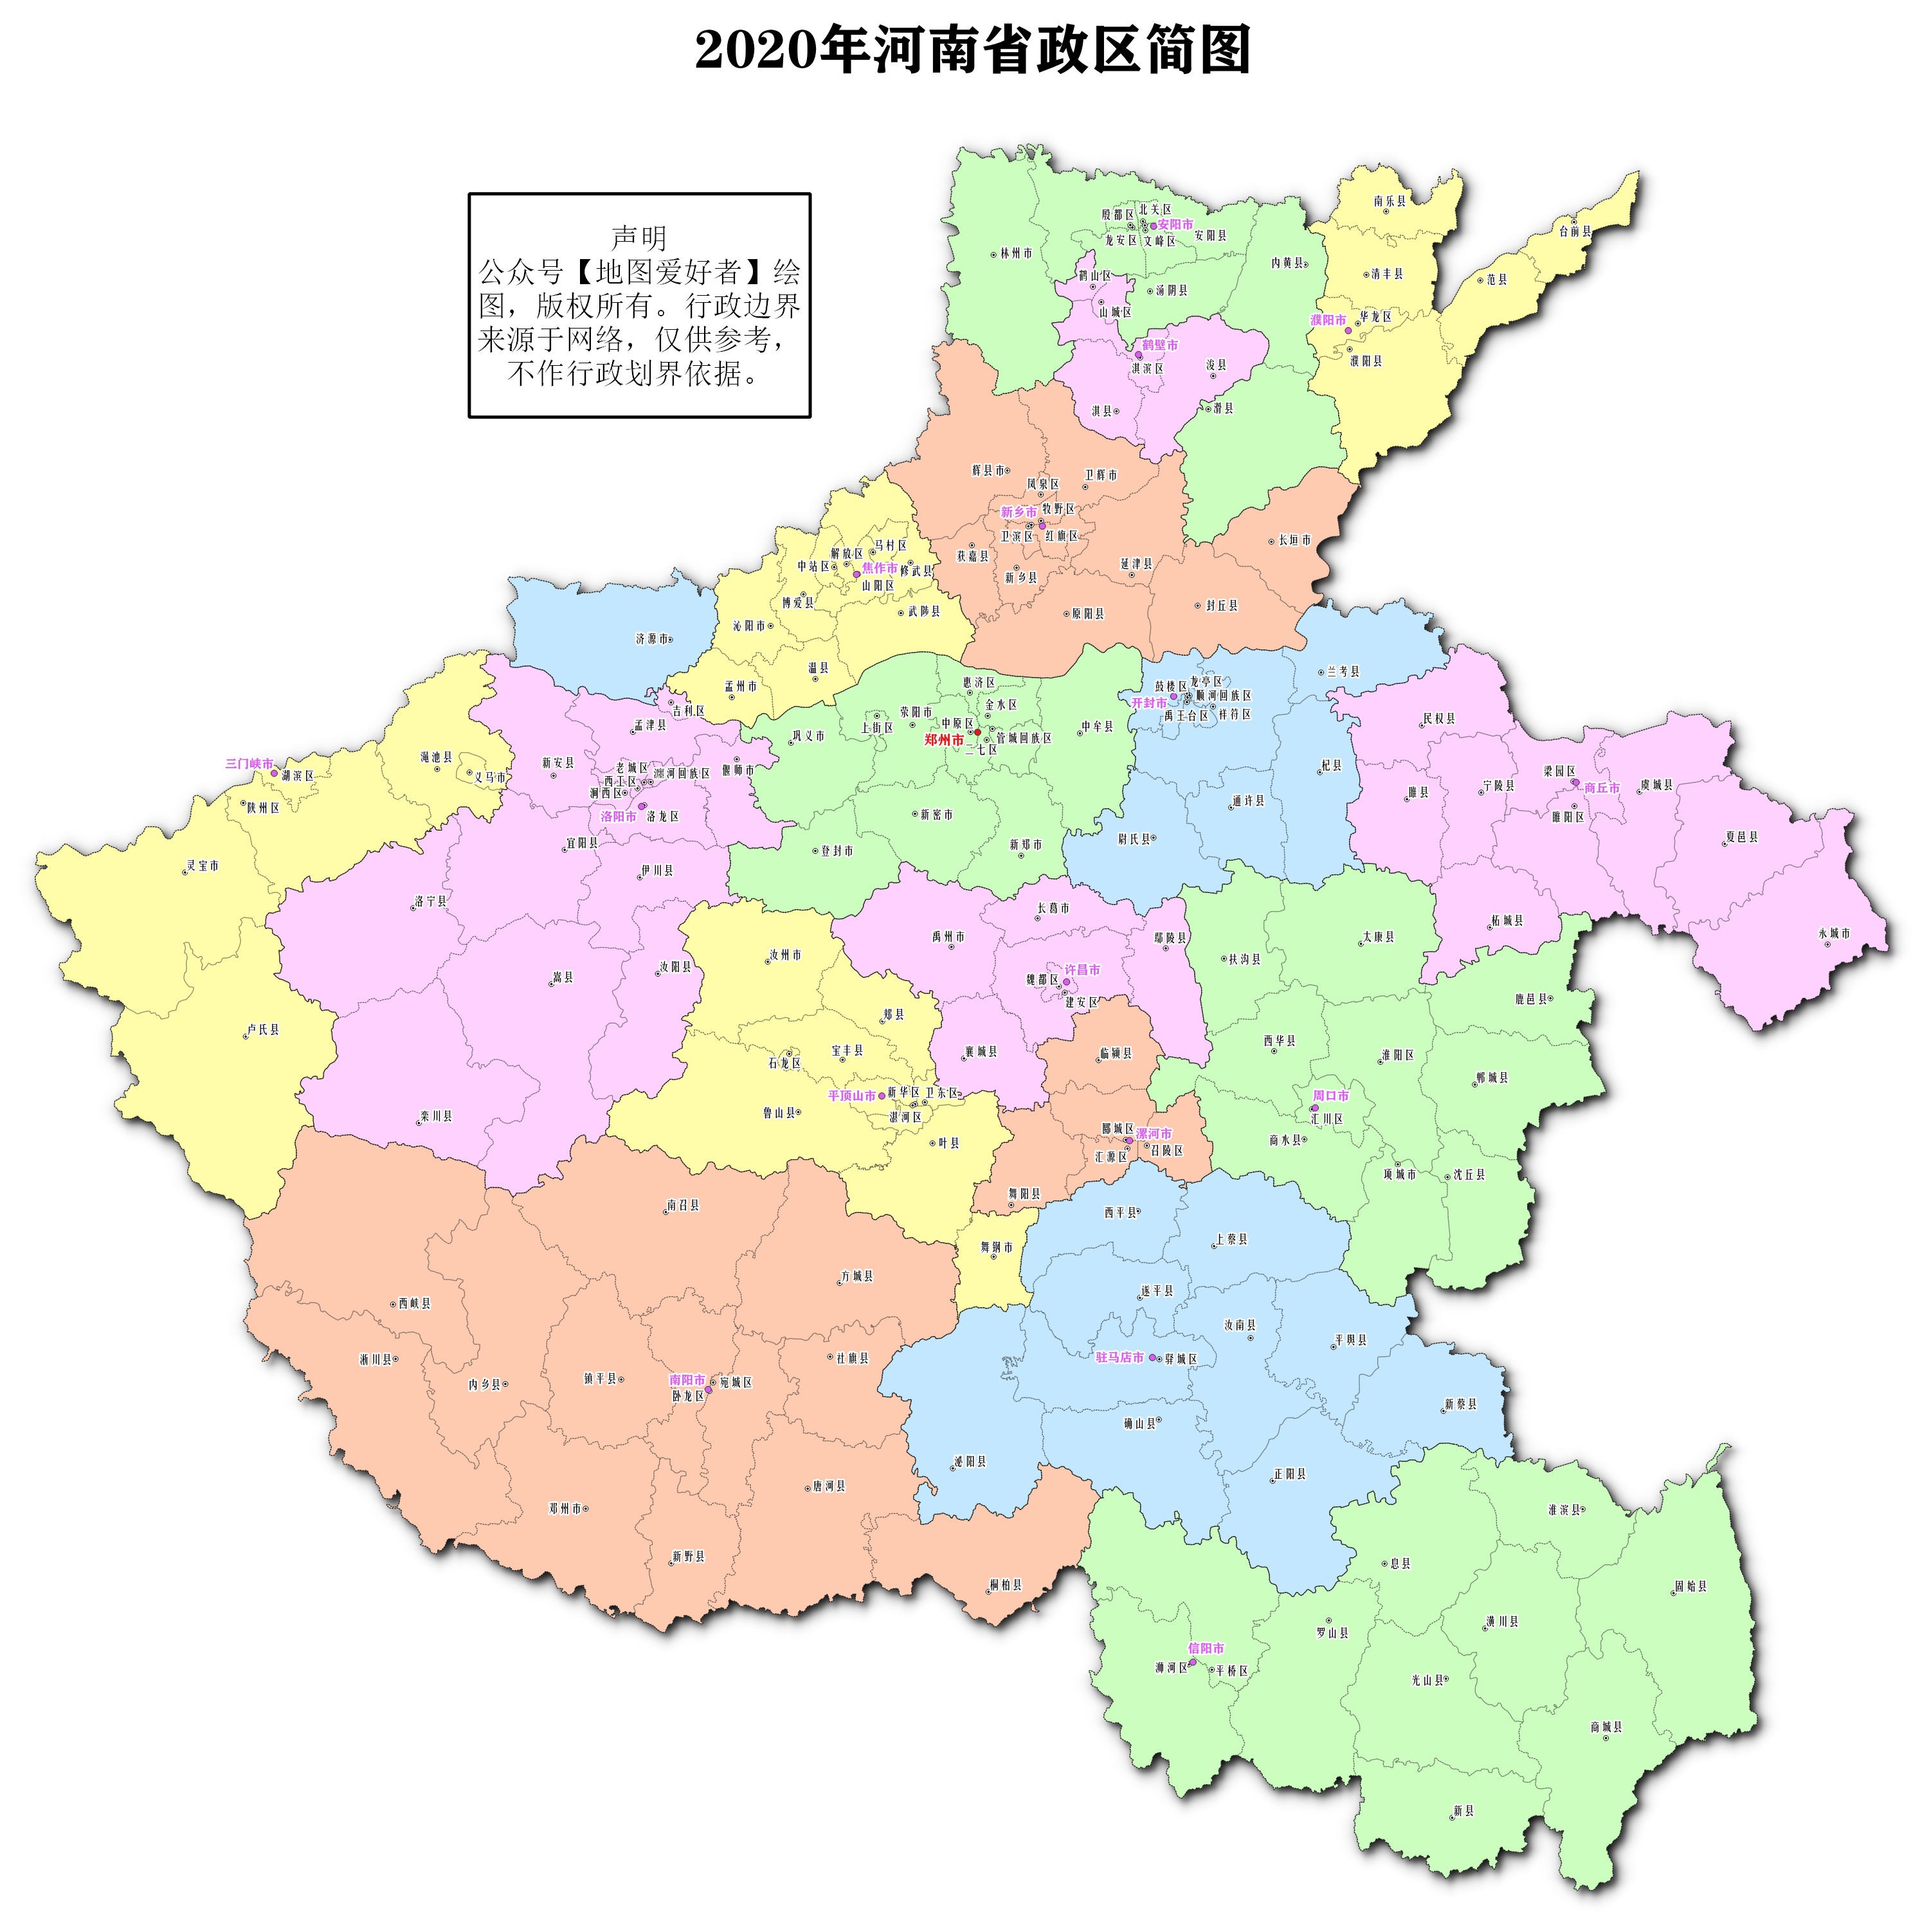 032020年港澳台地图中国香港分为十八个行政分区,每行政区设一个区